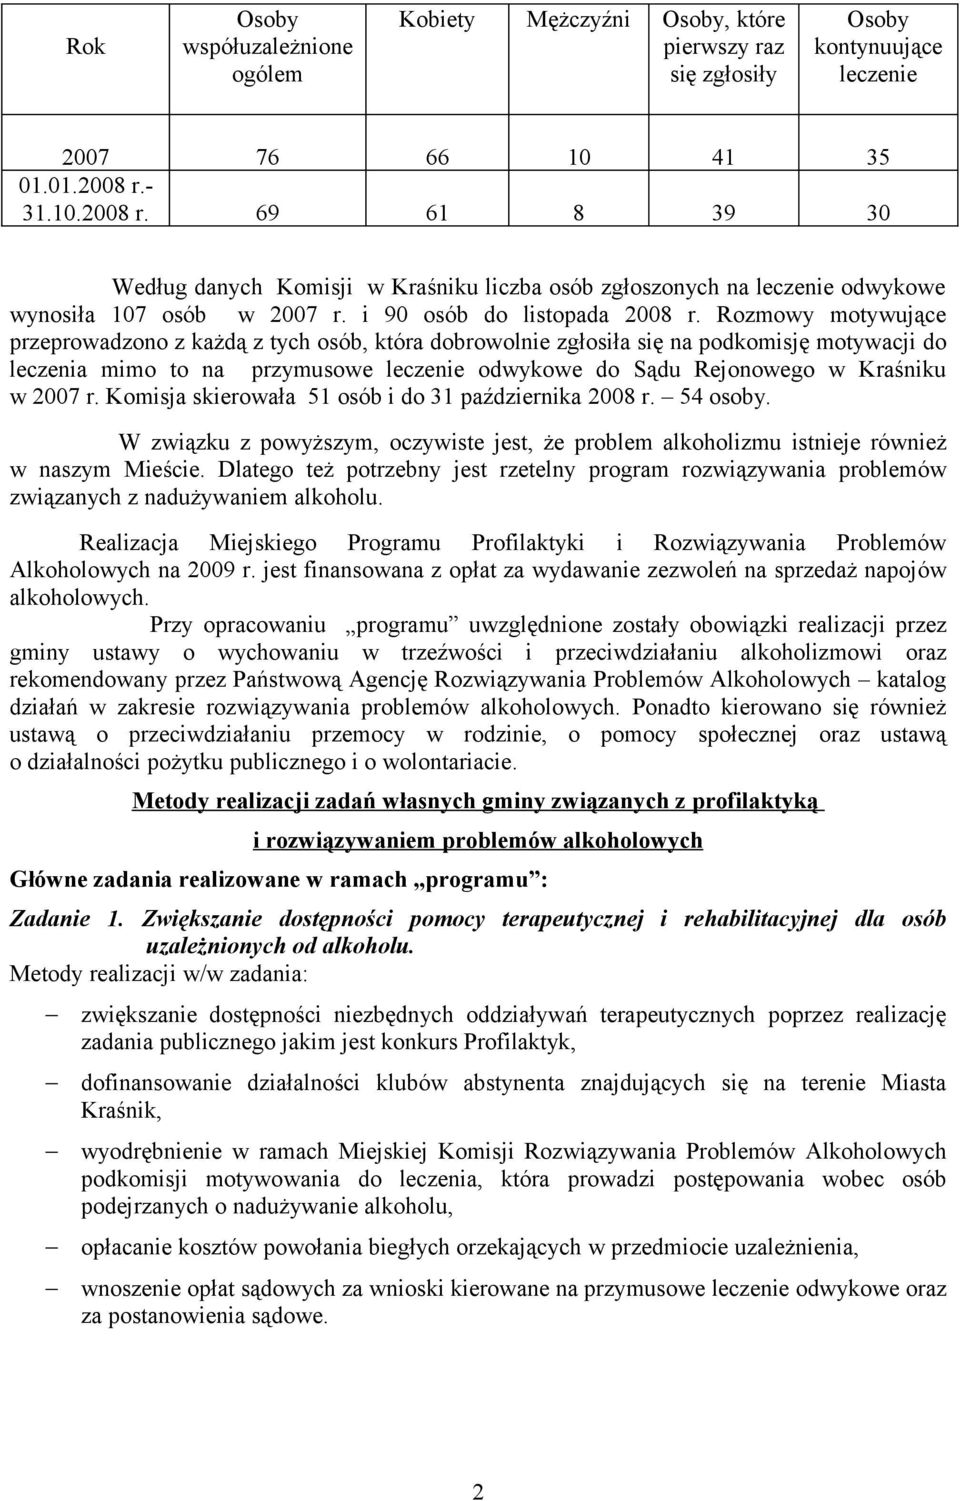 Rozmowy motywujące przeprowadzono z każdą z tych osób, która dobrowolnie zgłosiła się na podkomisję motywacji do leczenia mimo to na przymusowe leczenie odwykowe do Sądu Rejonowego w Kraśniku w 2007